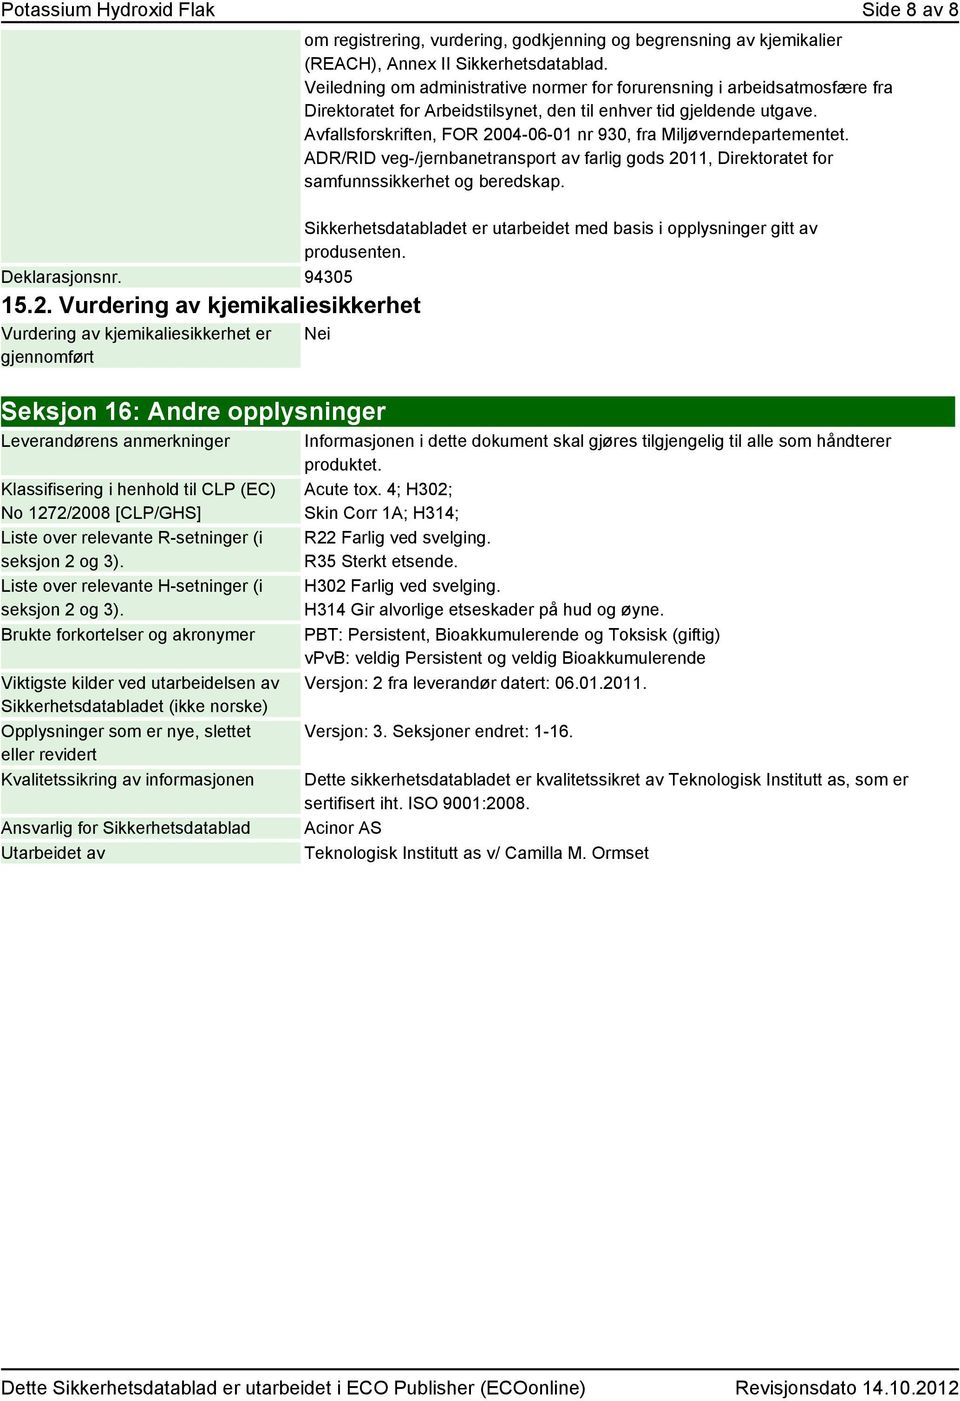 Avfallsforskriften, FOR 2004-06-01 nr 930, fra Miljøverndepartementet. ADR/RID veg-/jernbanetransport av farlig gods 2011, Direktoratet for samfunnssikkerhet og beredskap.